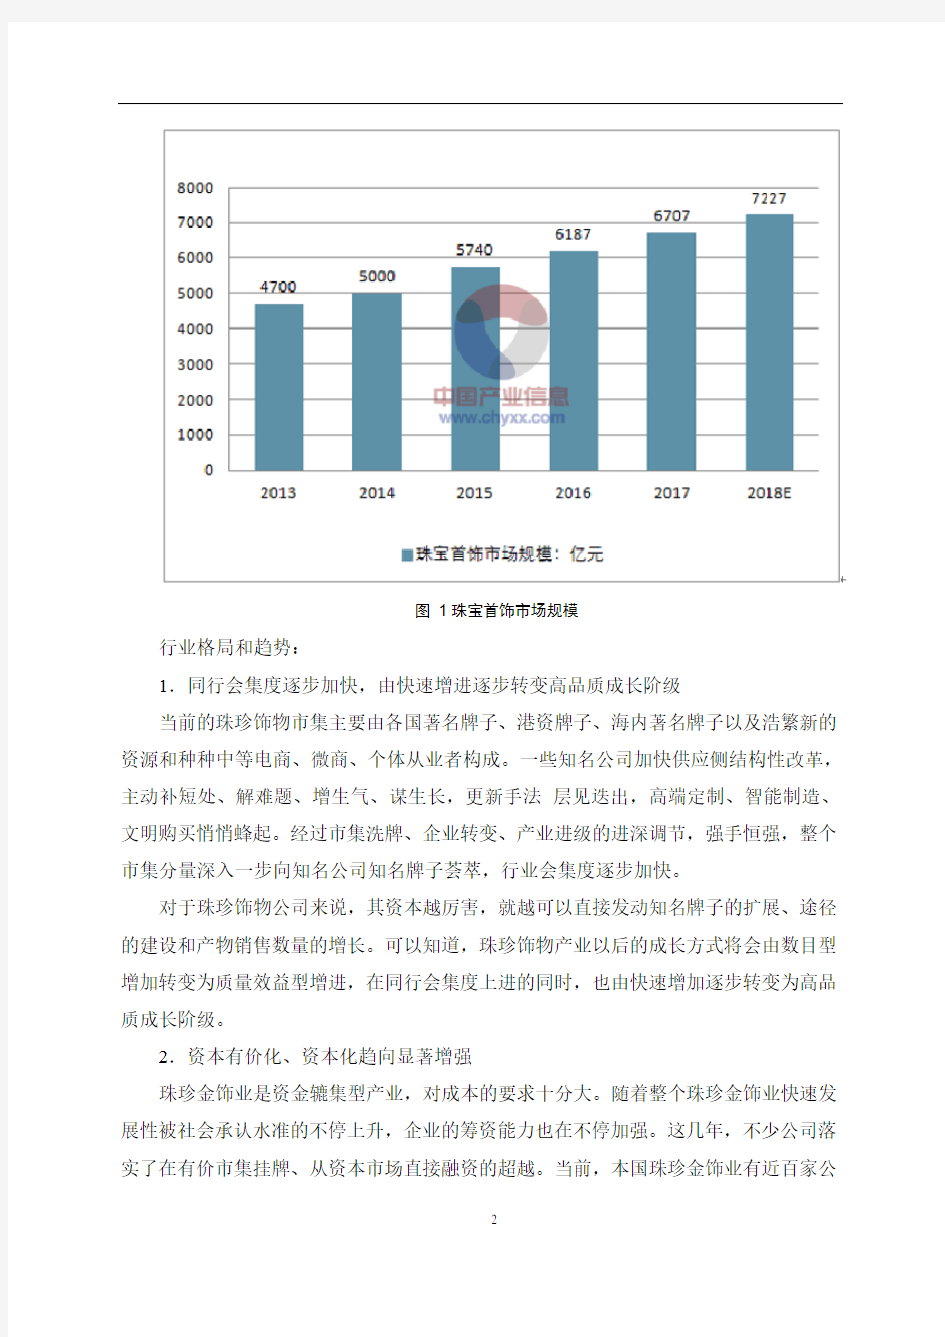 2018年上海老凤祥股份有限公司分析报告